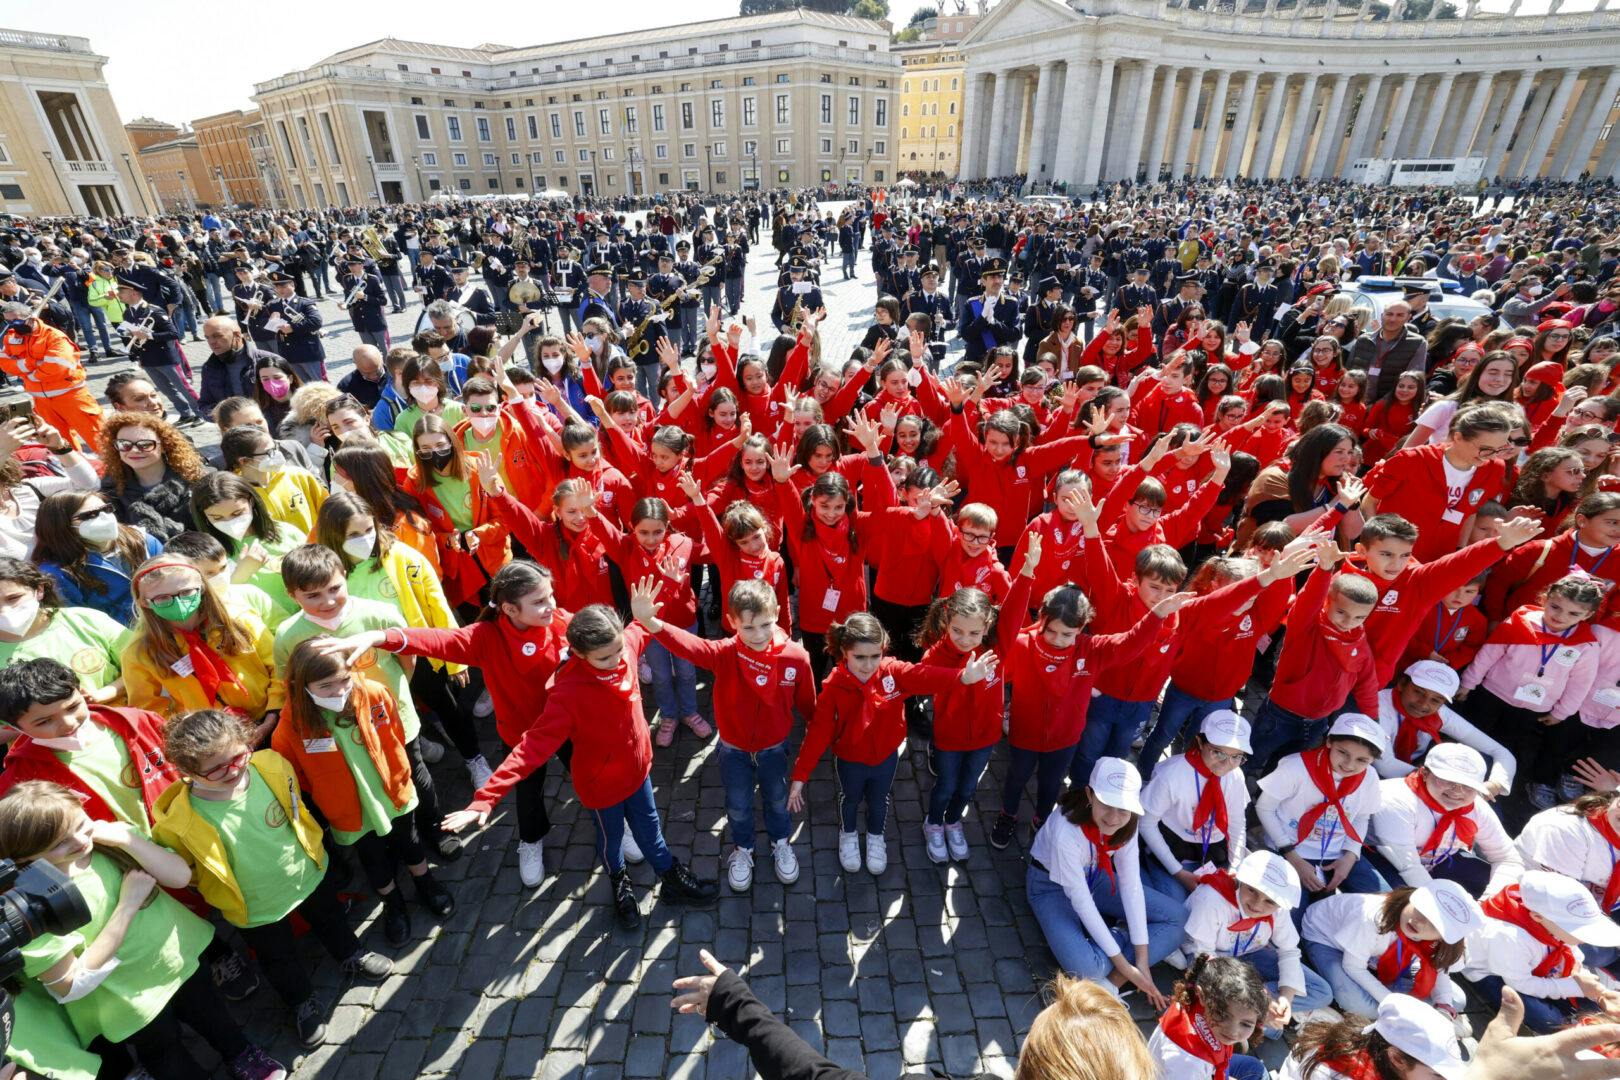 The Piccolo Coro at World Children's Day